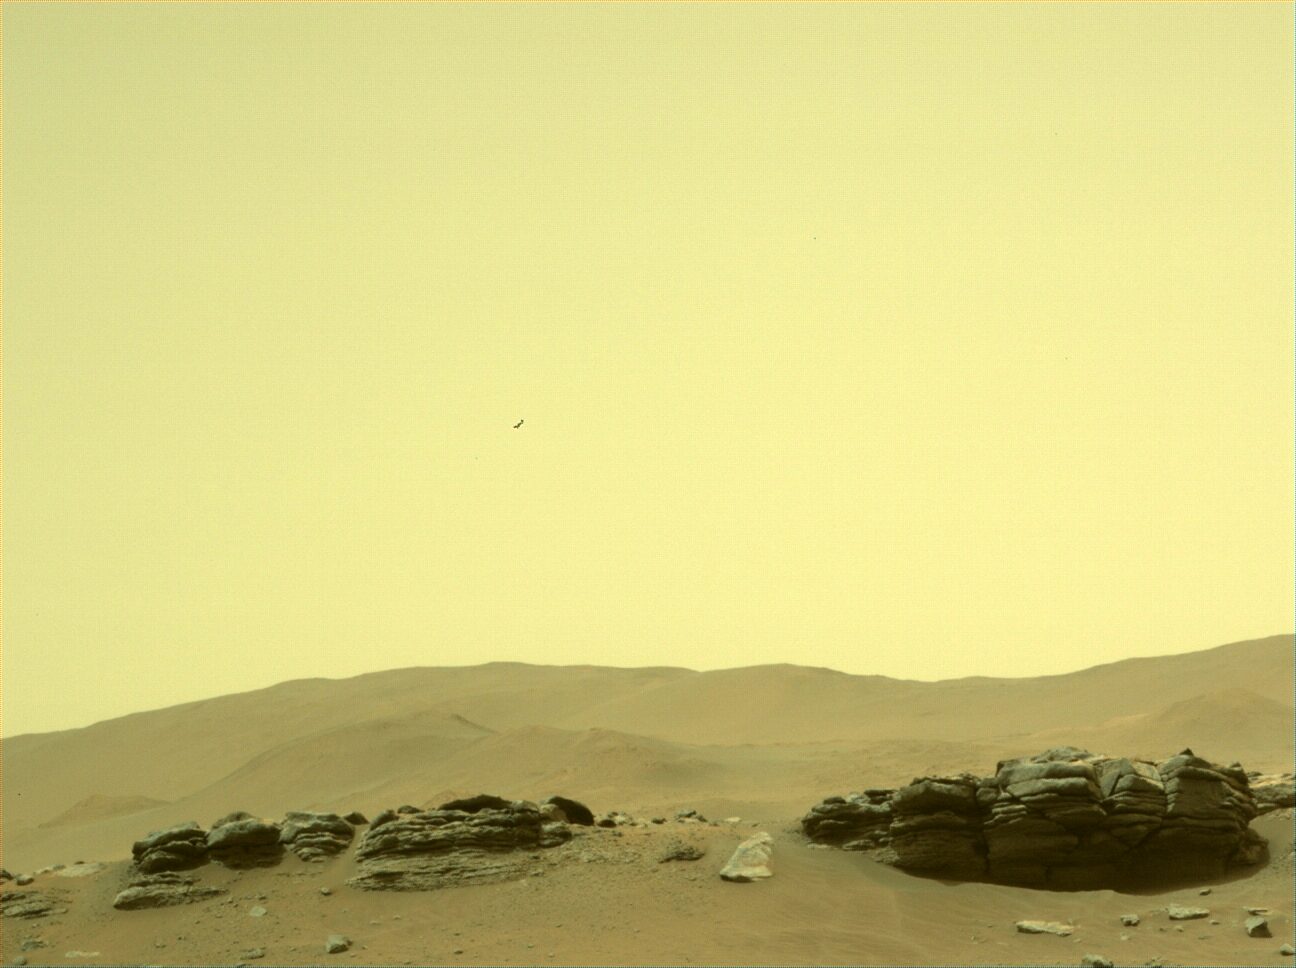 Aparece una “anomalía” en múltiples fotografías de Marte tomadas el 10 de enero de 2022 (Sol 317) – Aquí hay un desglose – Los archivos del caso de Black Vault